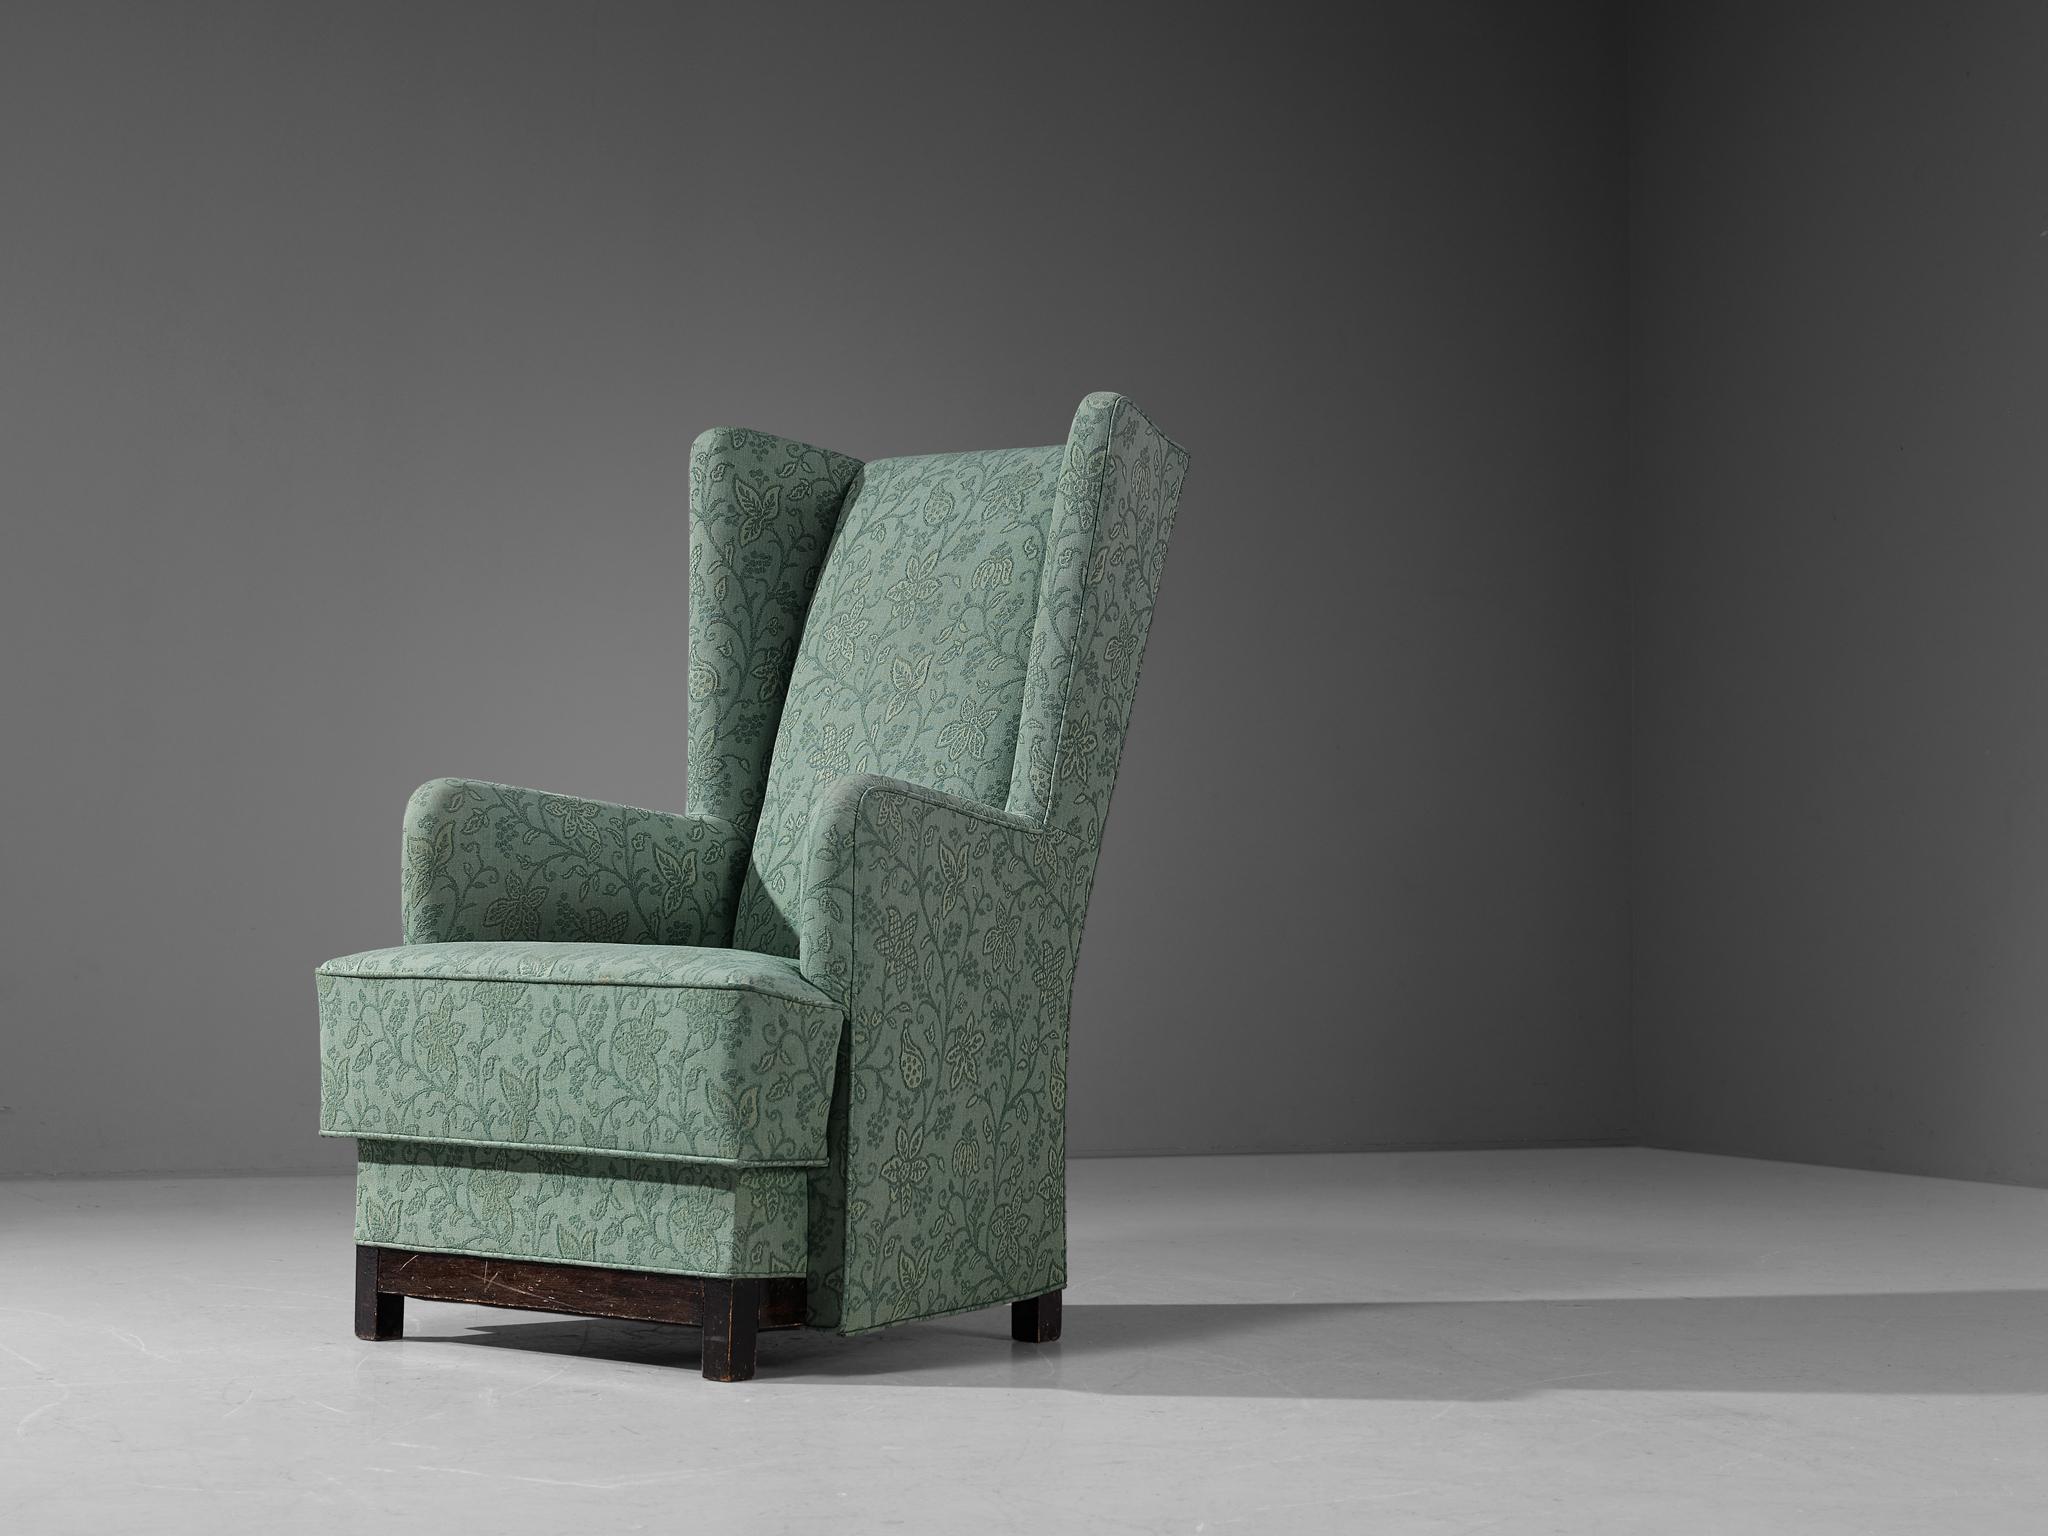 Attribué à Uno Åhrén et Björn Trägårdh pour Svenskt Tenn, fauteuil, tissu, bois teinté, Suède, années 1930.

Cette chaise longue d'origine suédoise est dotée d'un revêtement vert menthe orné de motifs floraux. Le design repose sur une construction